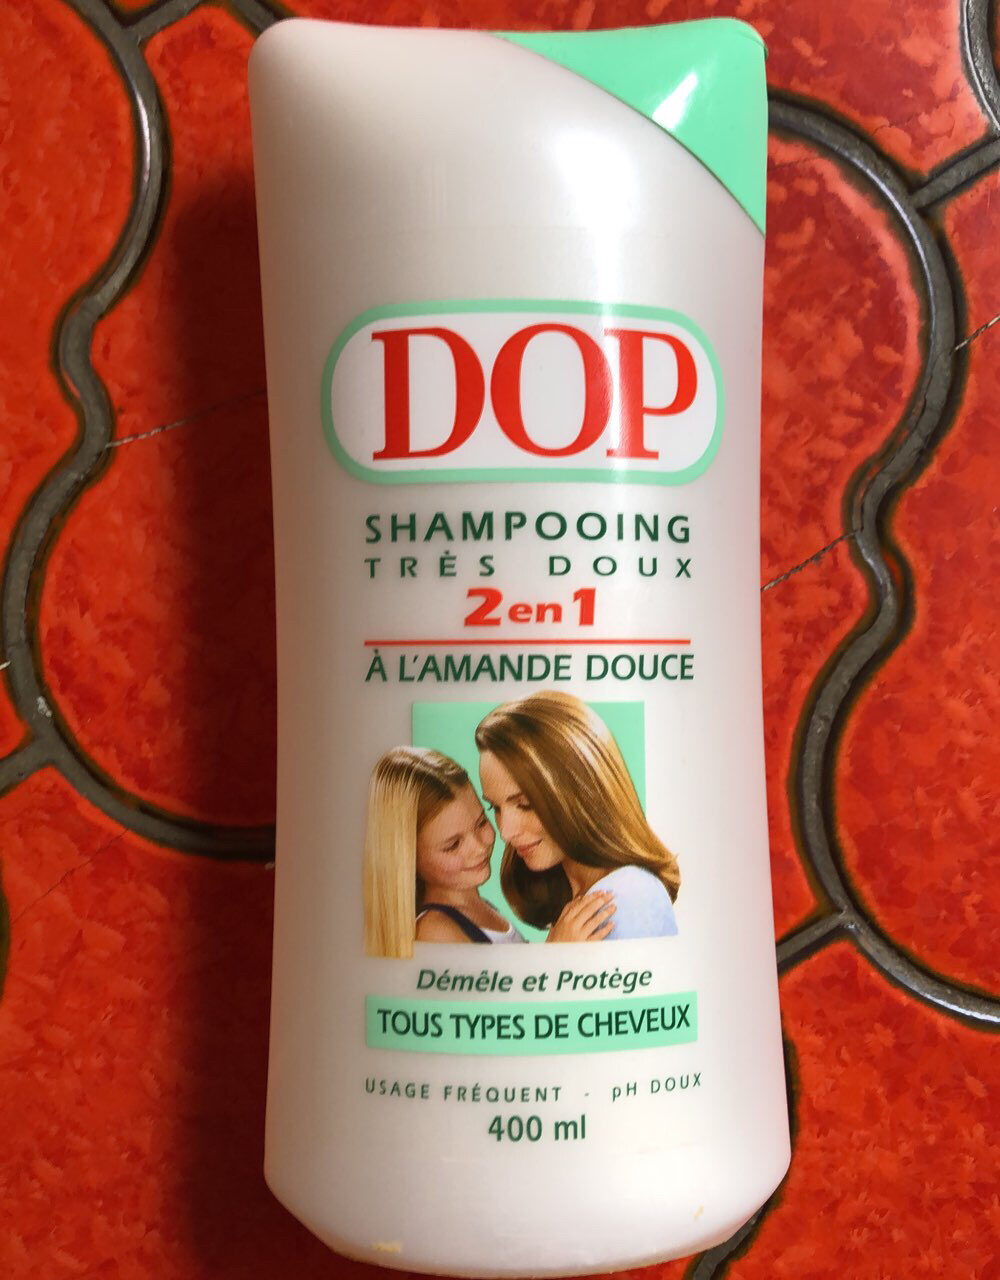 Shampooing très doux - Product - en